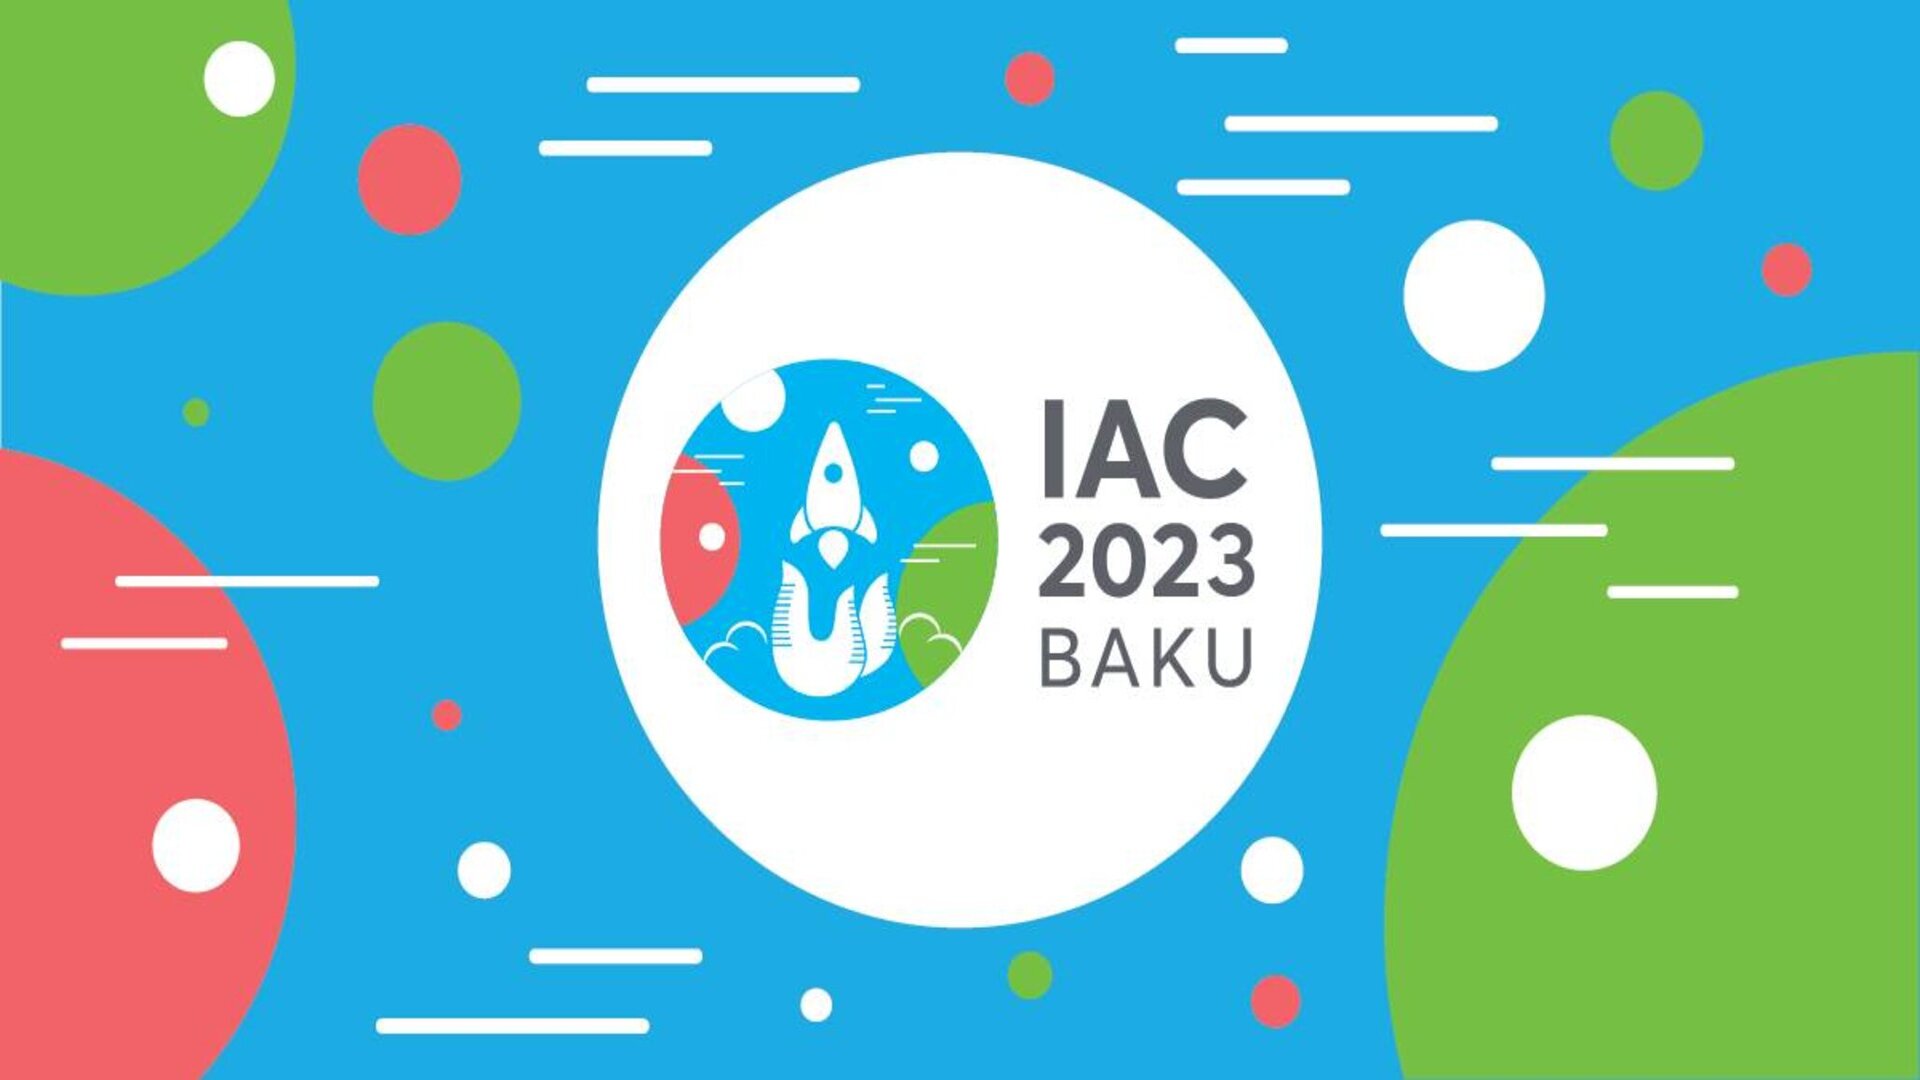 ASI - Al via a Baku la 74° edizione dello IAC, Congresso Mondiale sullo Spazio